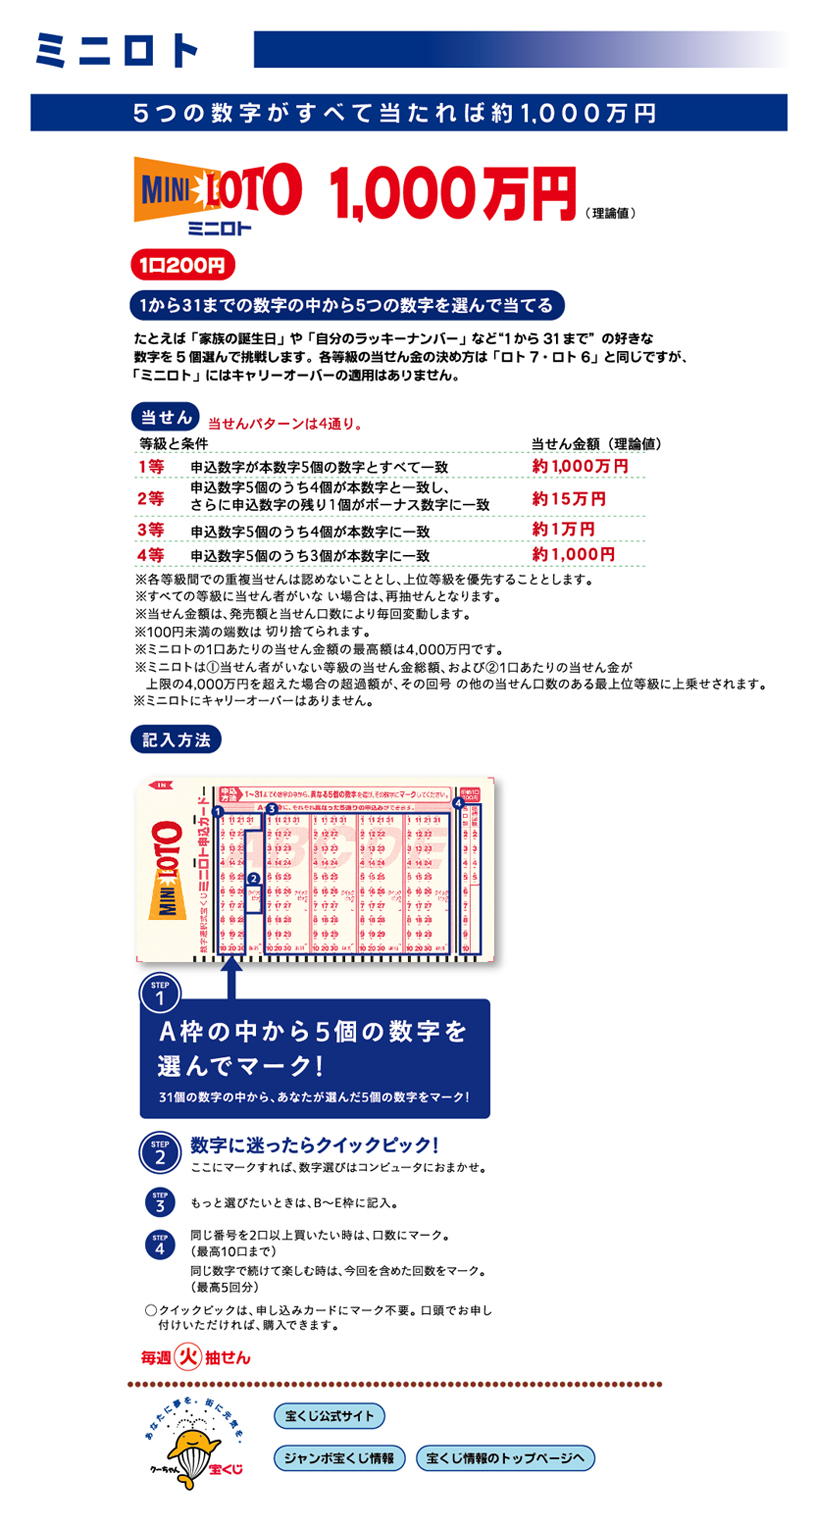 从迷你彩票1到31的数字中选出5个数字猜到的5个数字全部中的话,大约1000万日元1个200日元每周二抽签